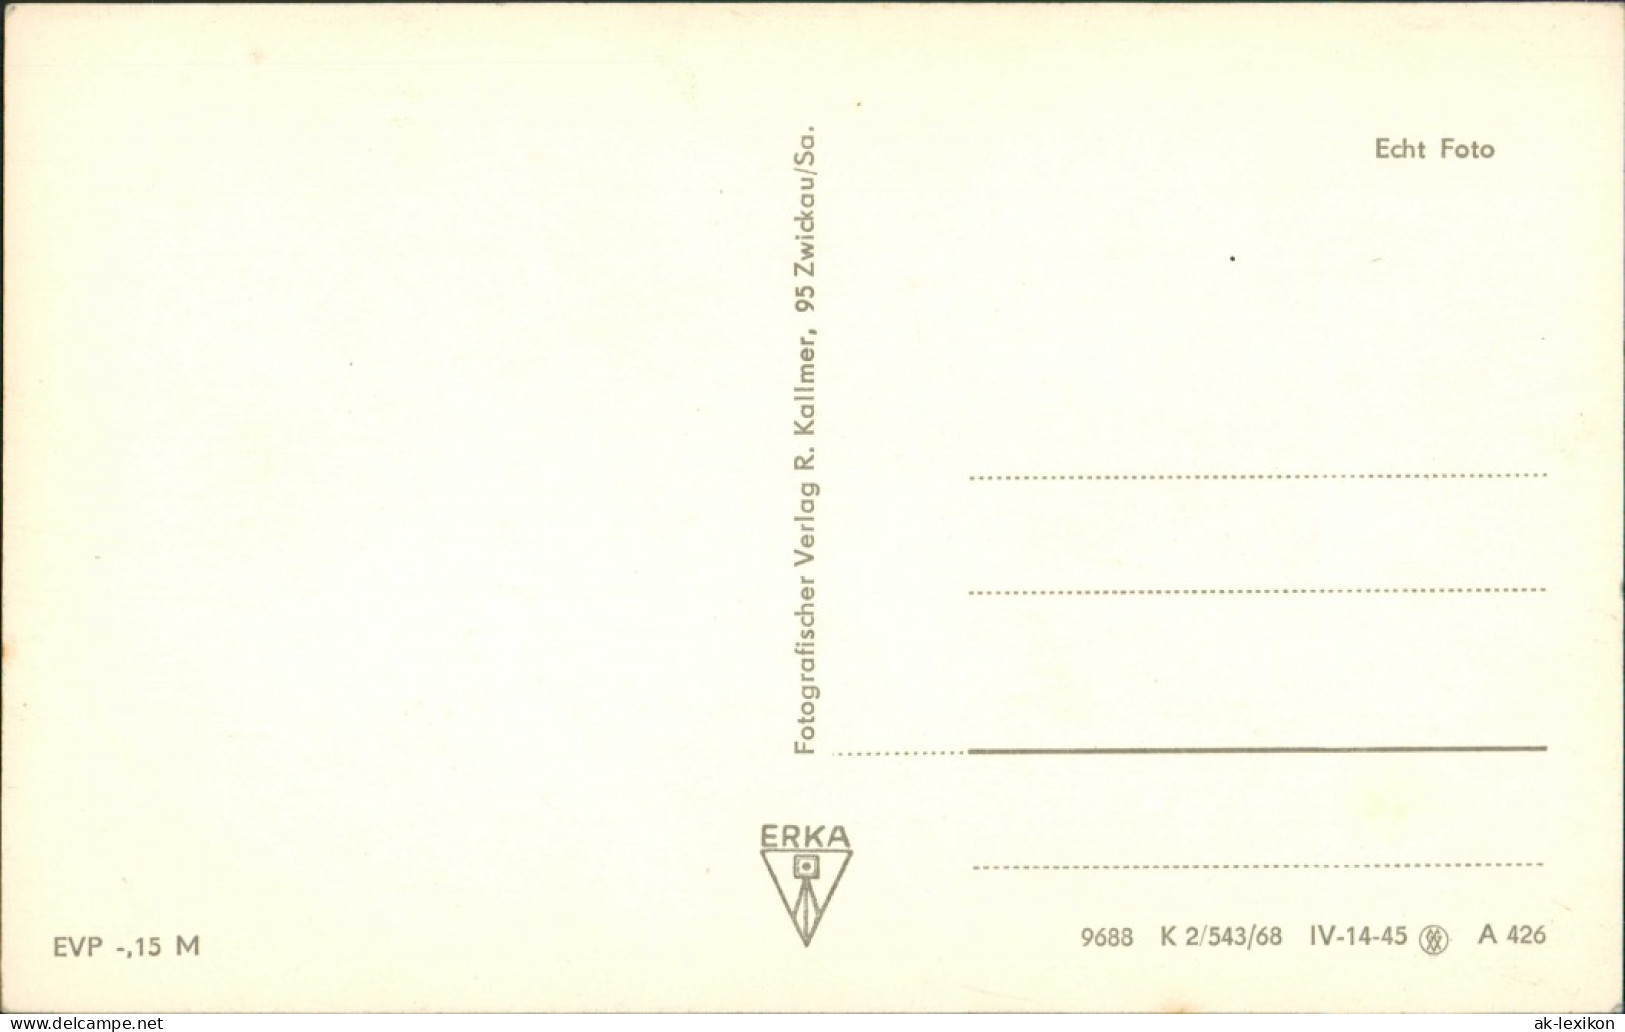 Hohenstein-Ernstthal Bethlehemstift-Hüttengrunde Blockhaus DDR Postkarte 1968 - Hohenstein-Ernstthal